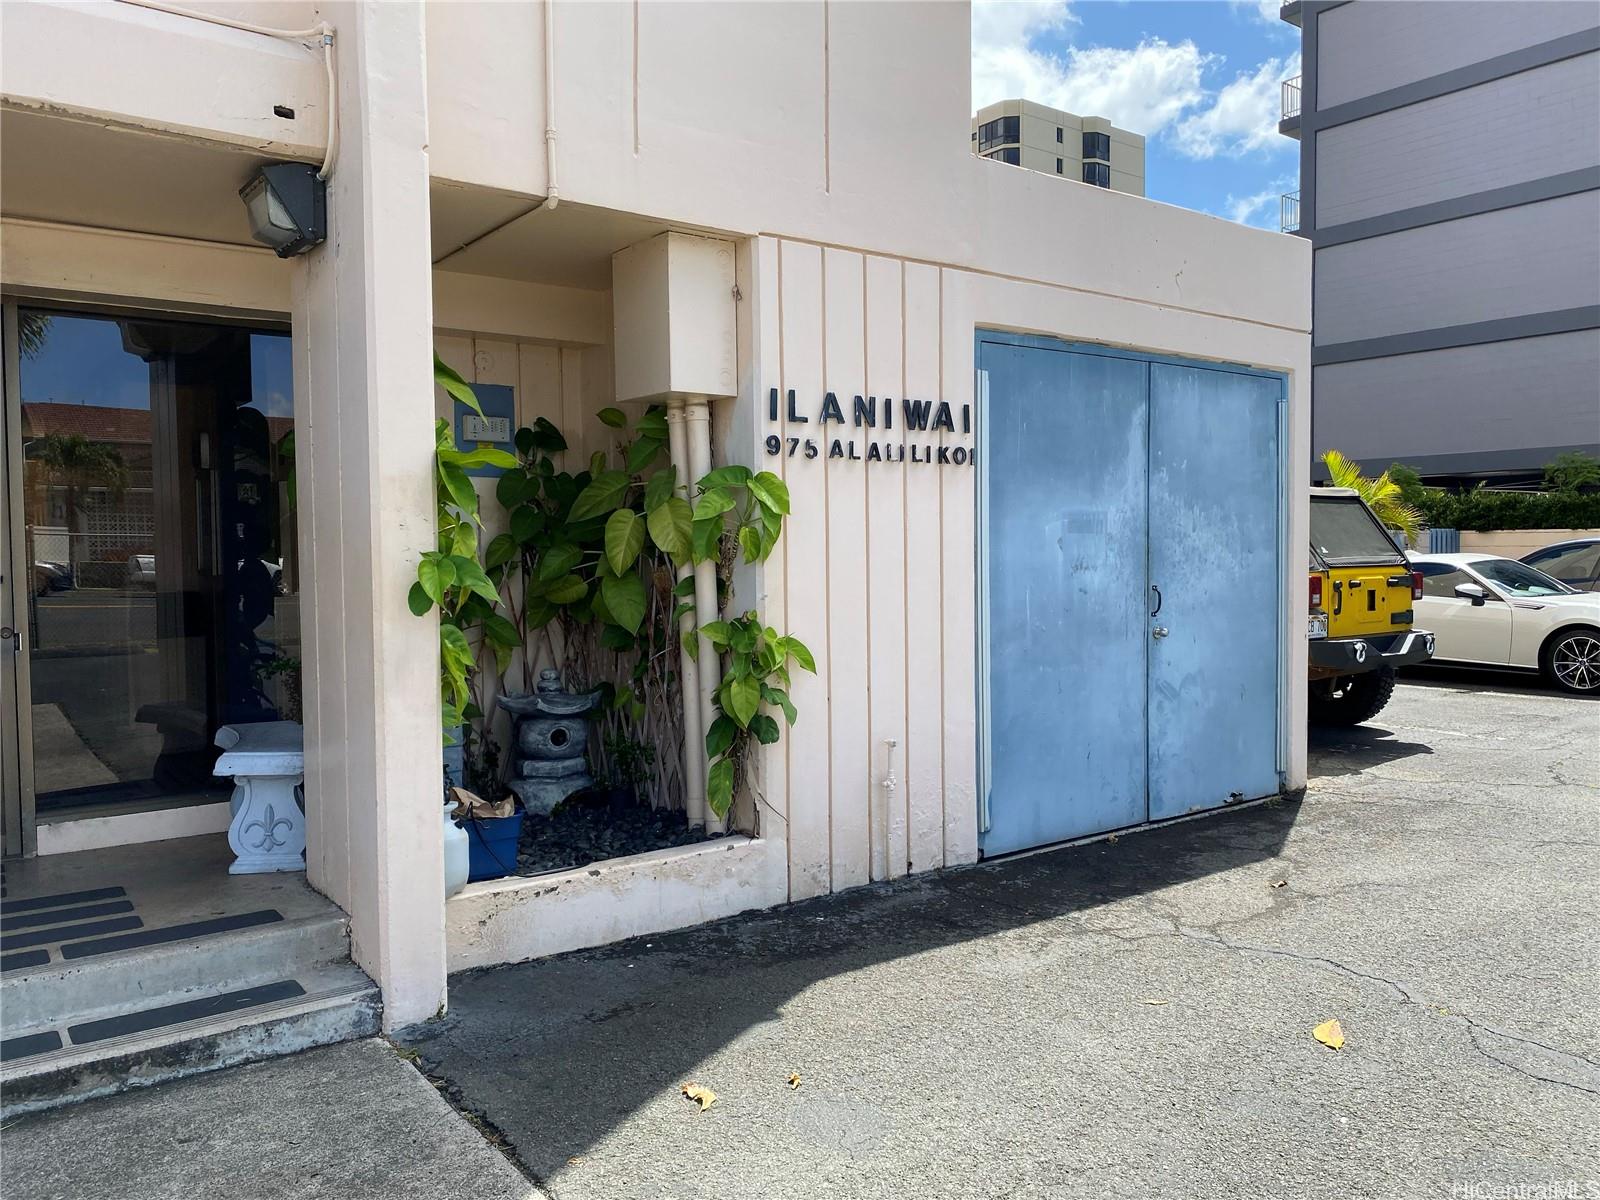 Ilaniwai 975 Ala Lilikoi Street #904, Honolulu, HI 96818